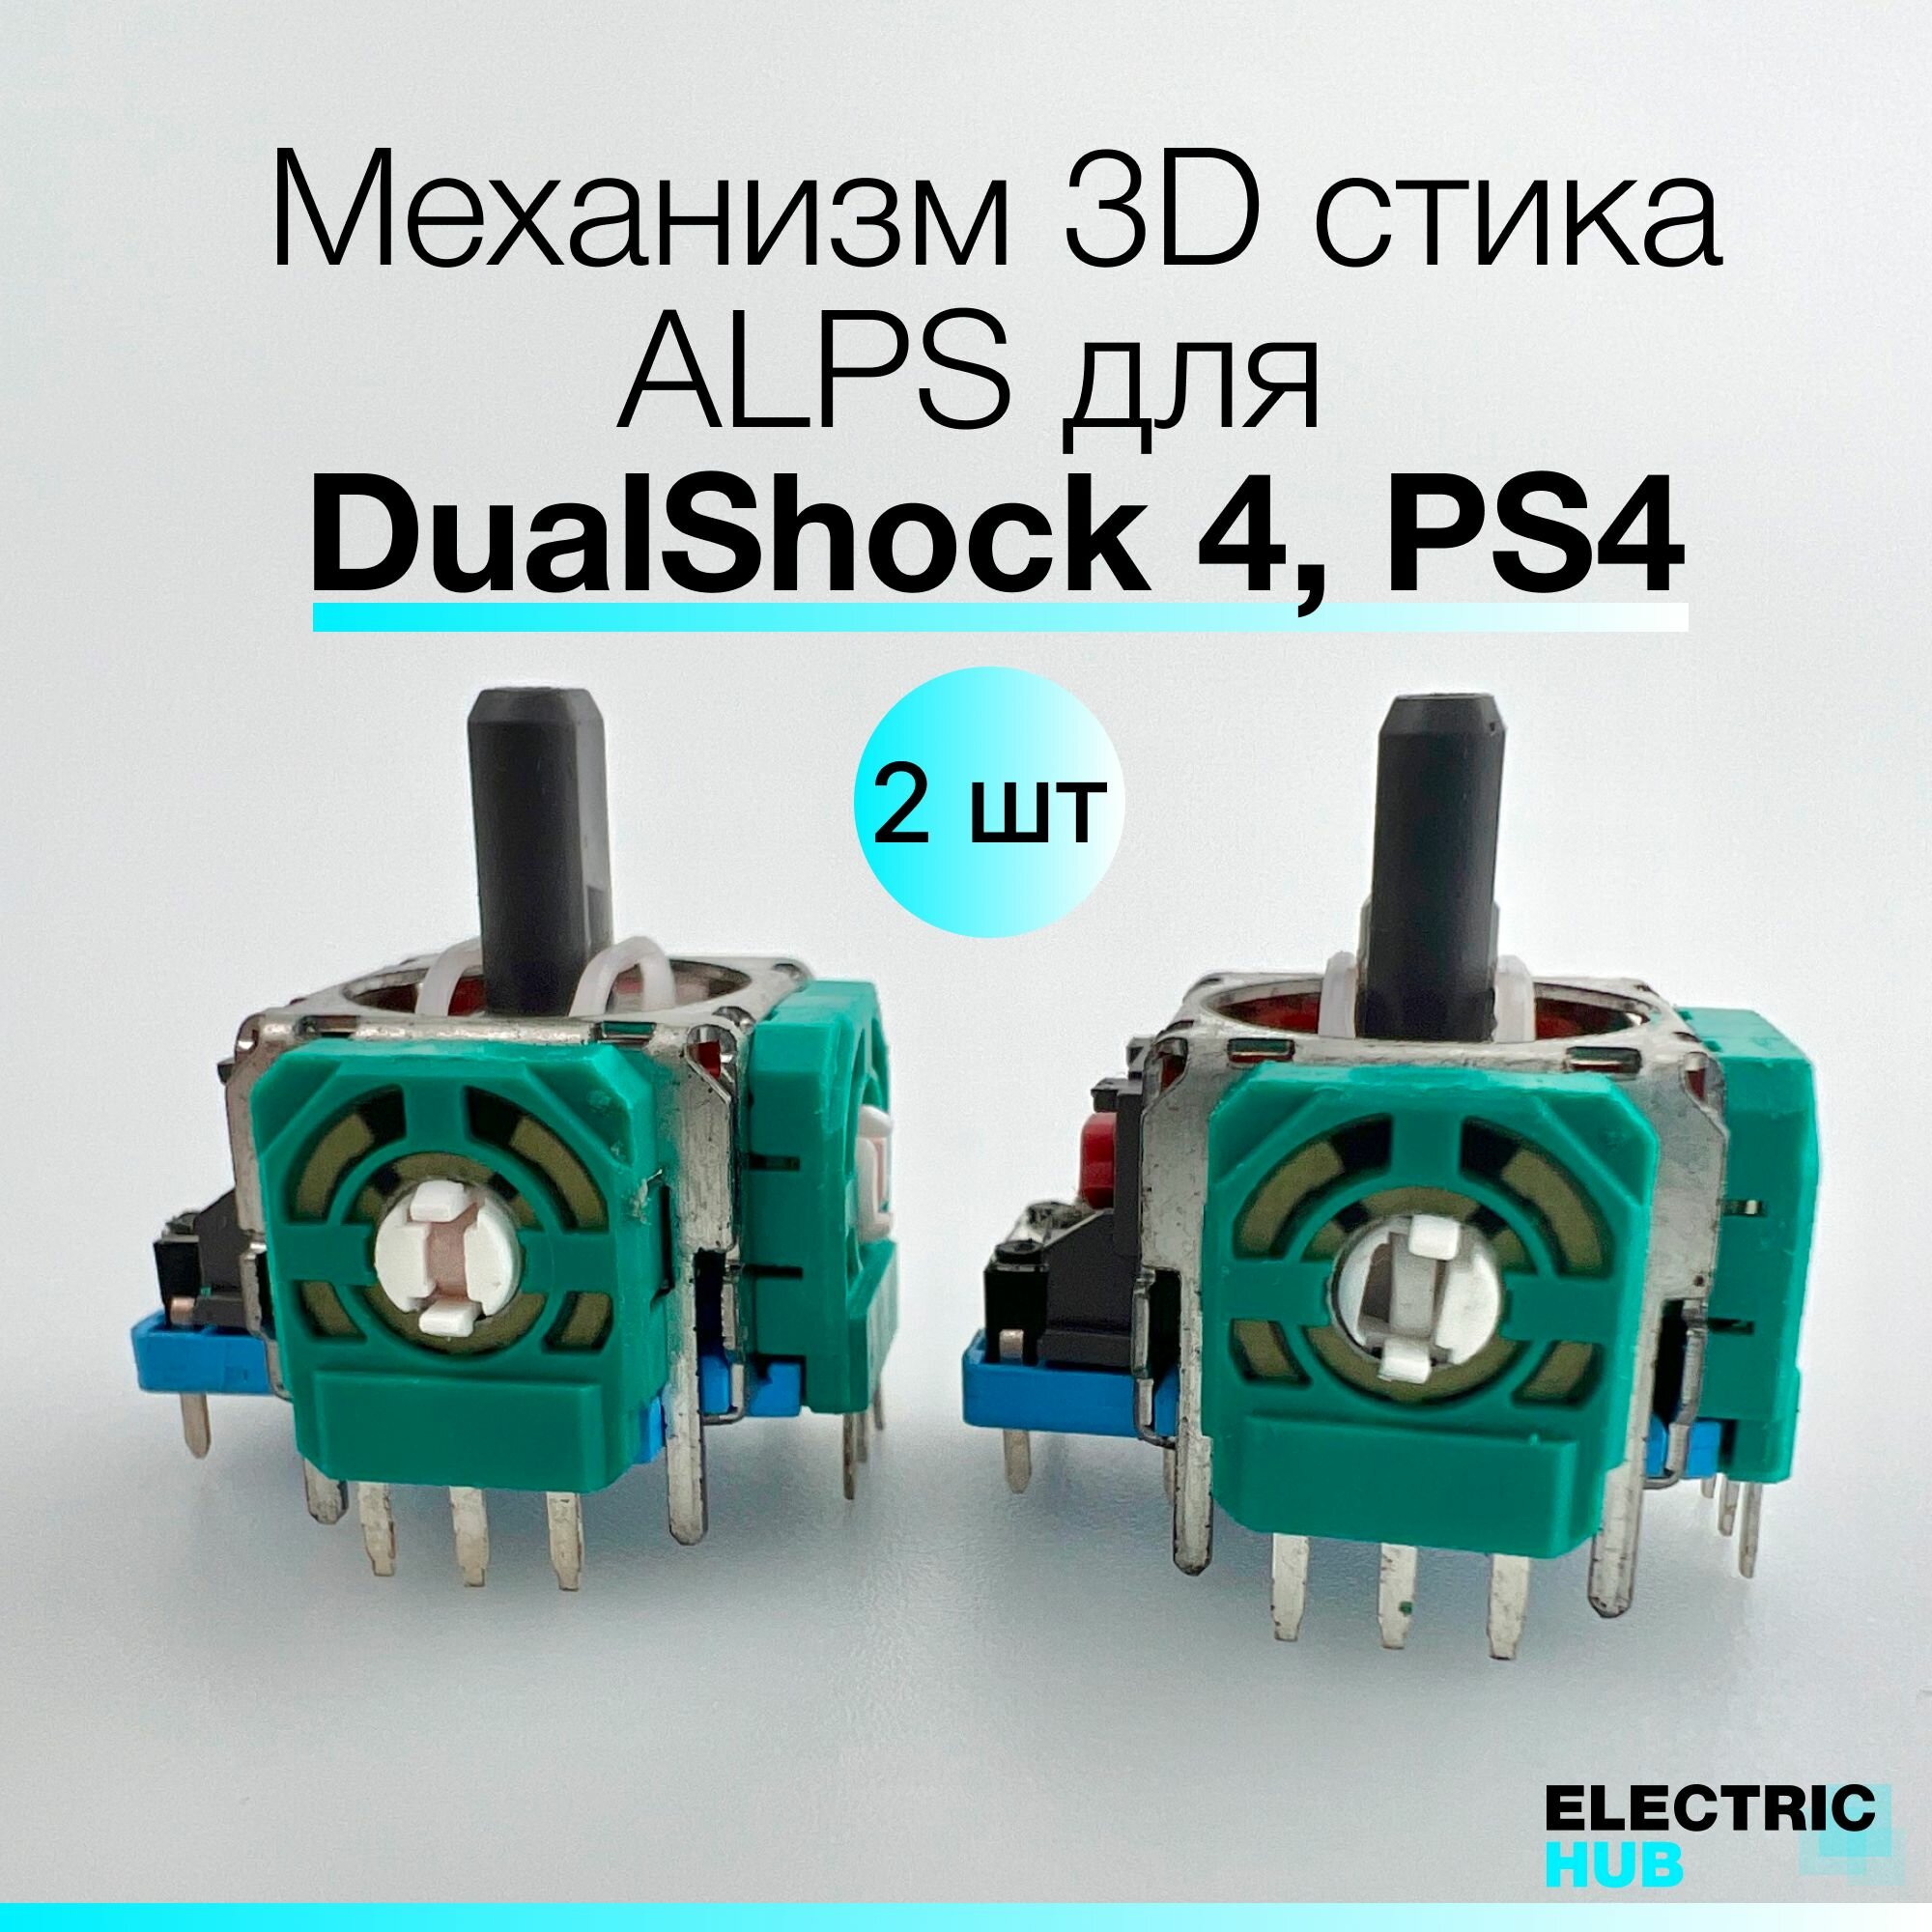 Оригинальный механизм 3D стика ALPS для DualShock 4, PS4, для ремонта джойстика/геймпада, 2 шт.